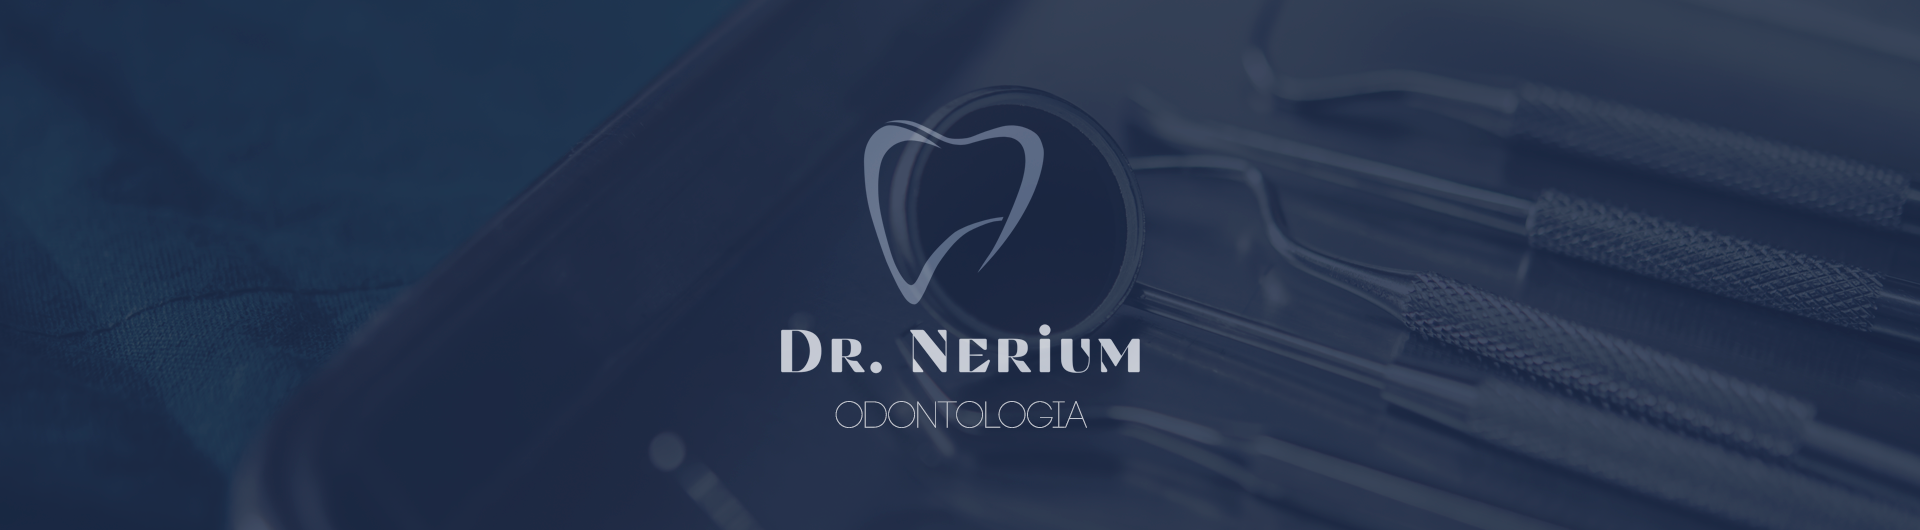 Dr Nerium Odontologia - 